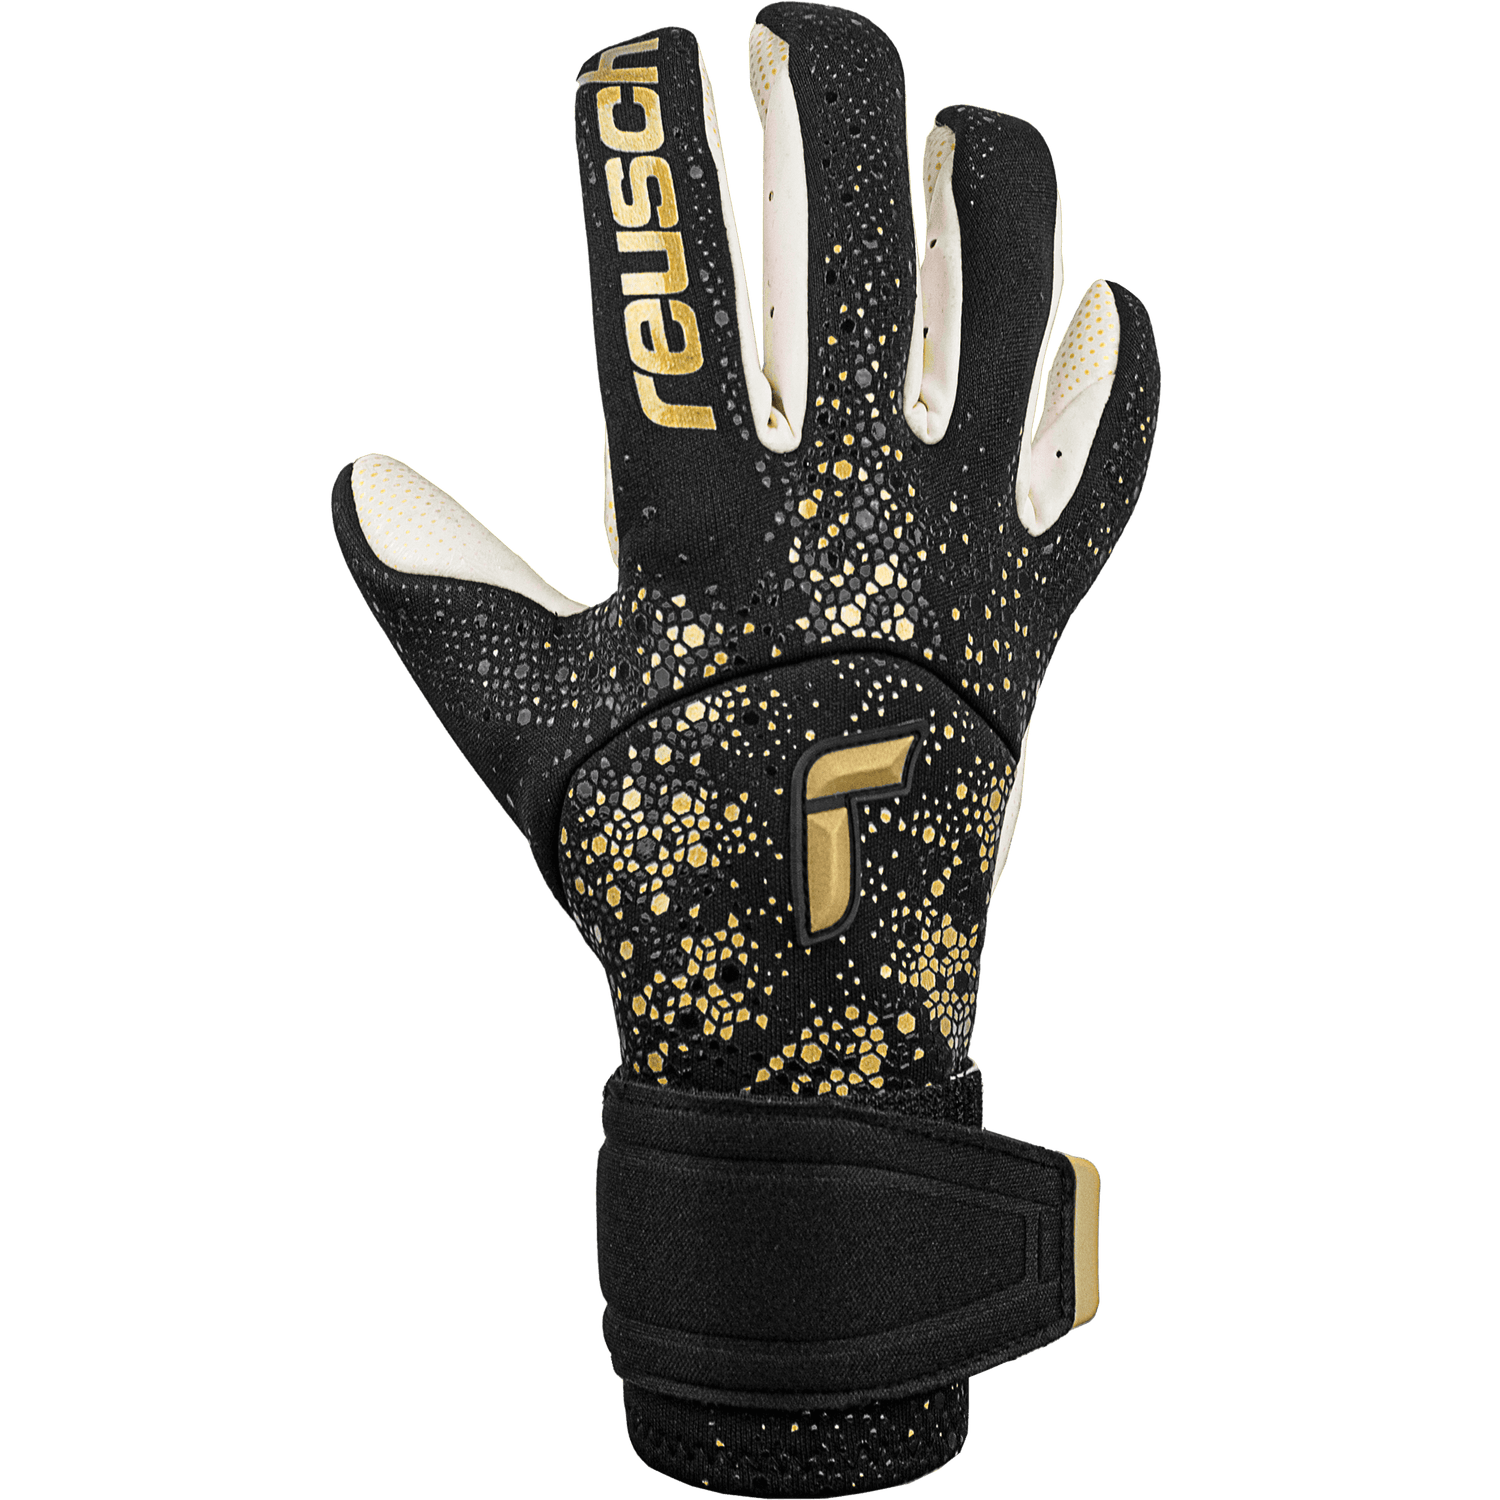 Reusch Pure Contact Gold X Glueprint Goalkeeper Gloves - Black-Gold (Single - Outer)